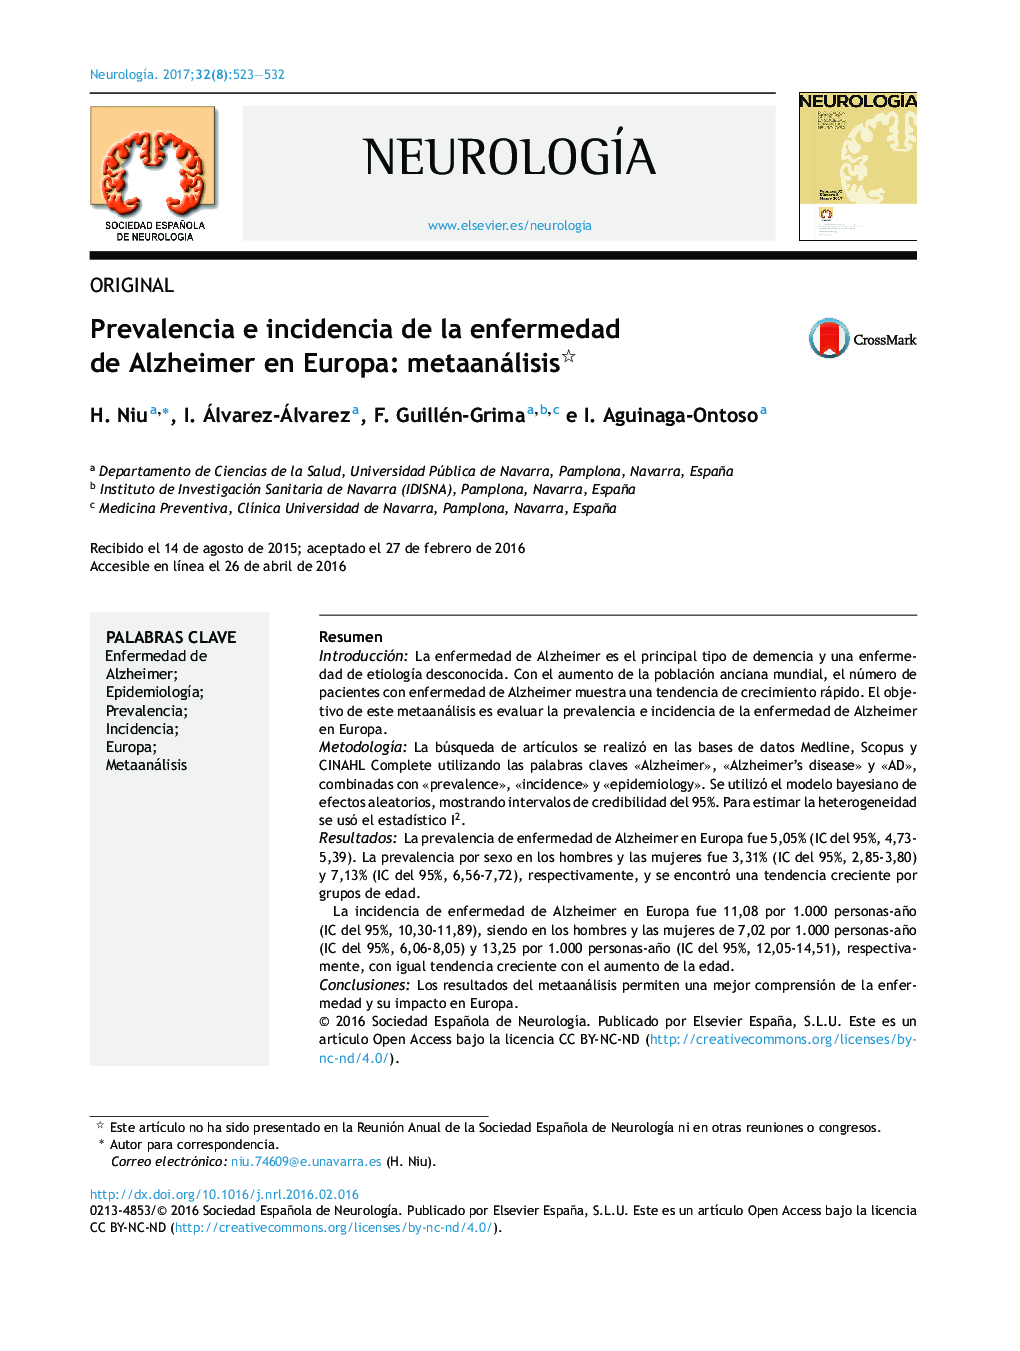 Prevalencia e incidencia de la enfermedad de Alzheimer en Europa: metaanálisis